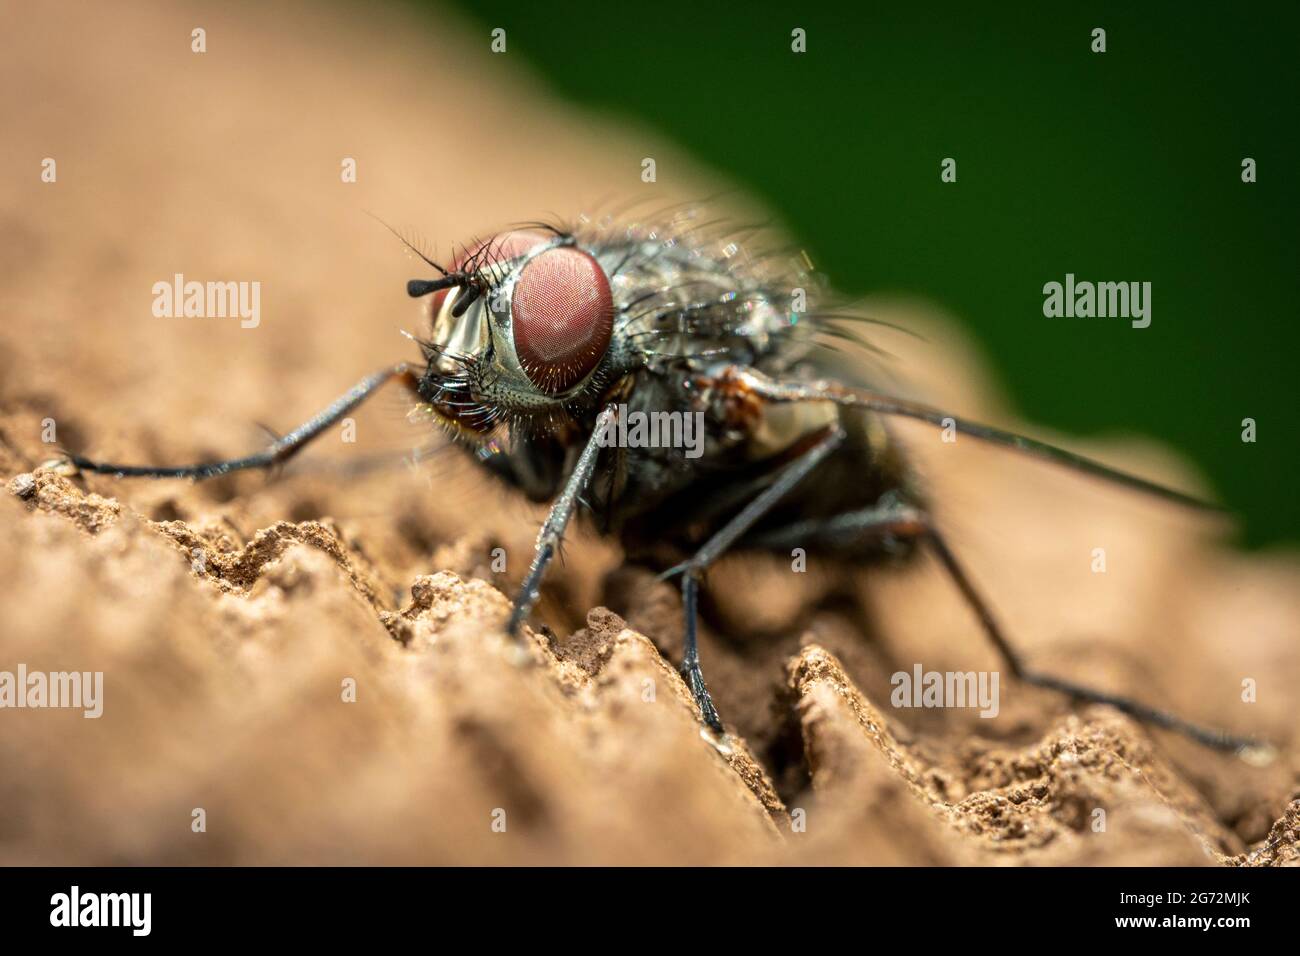 Eine Nahaufnahme einer Fliege mit großen roten Augen und einem haarigen schwarzen Körper. Stockfoto